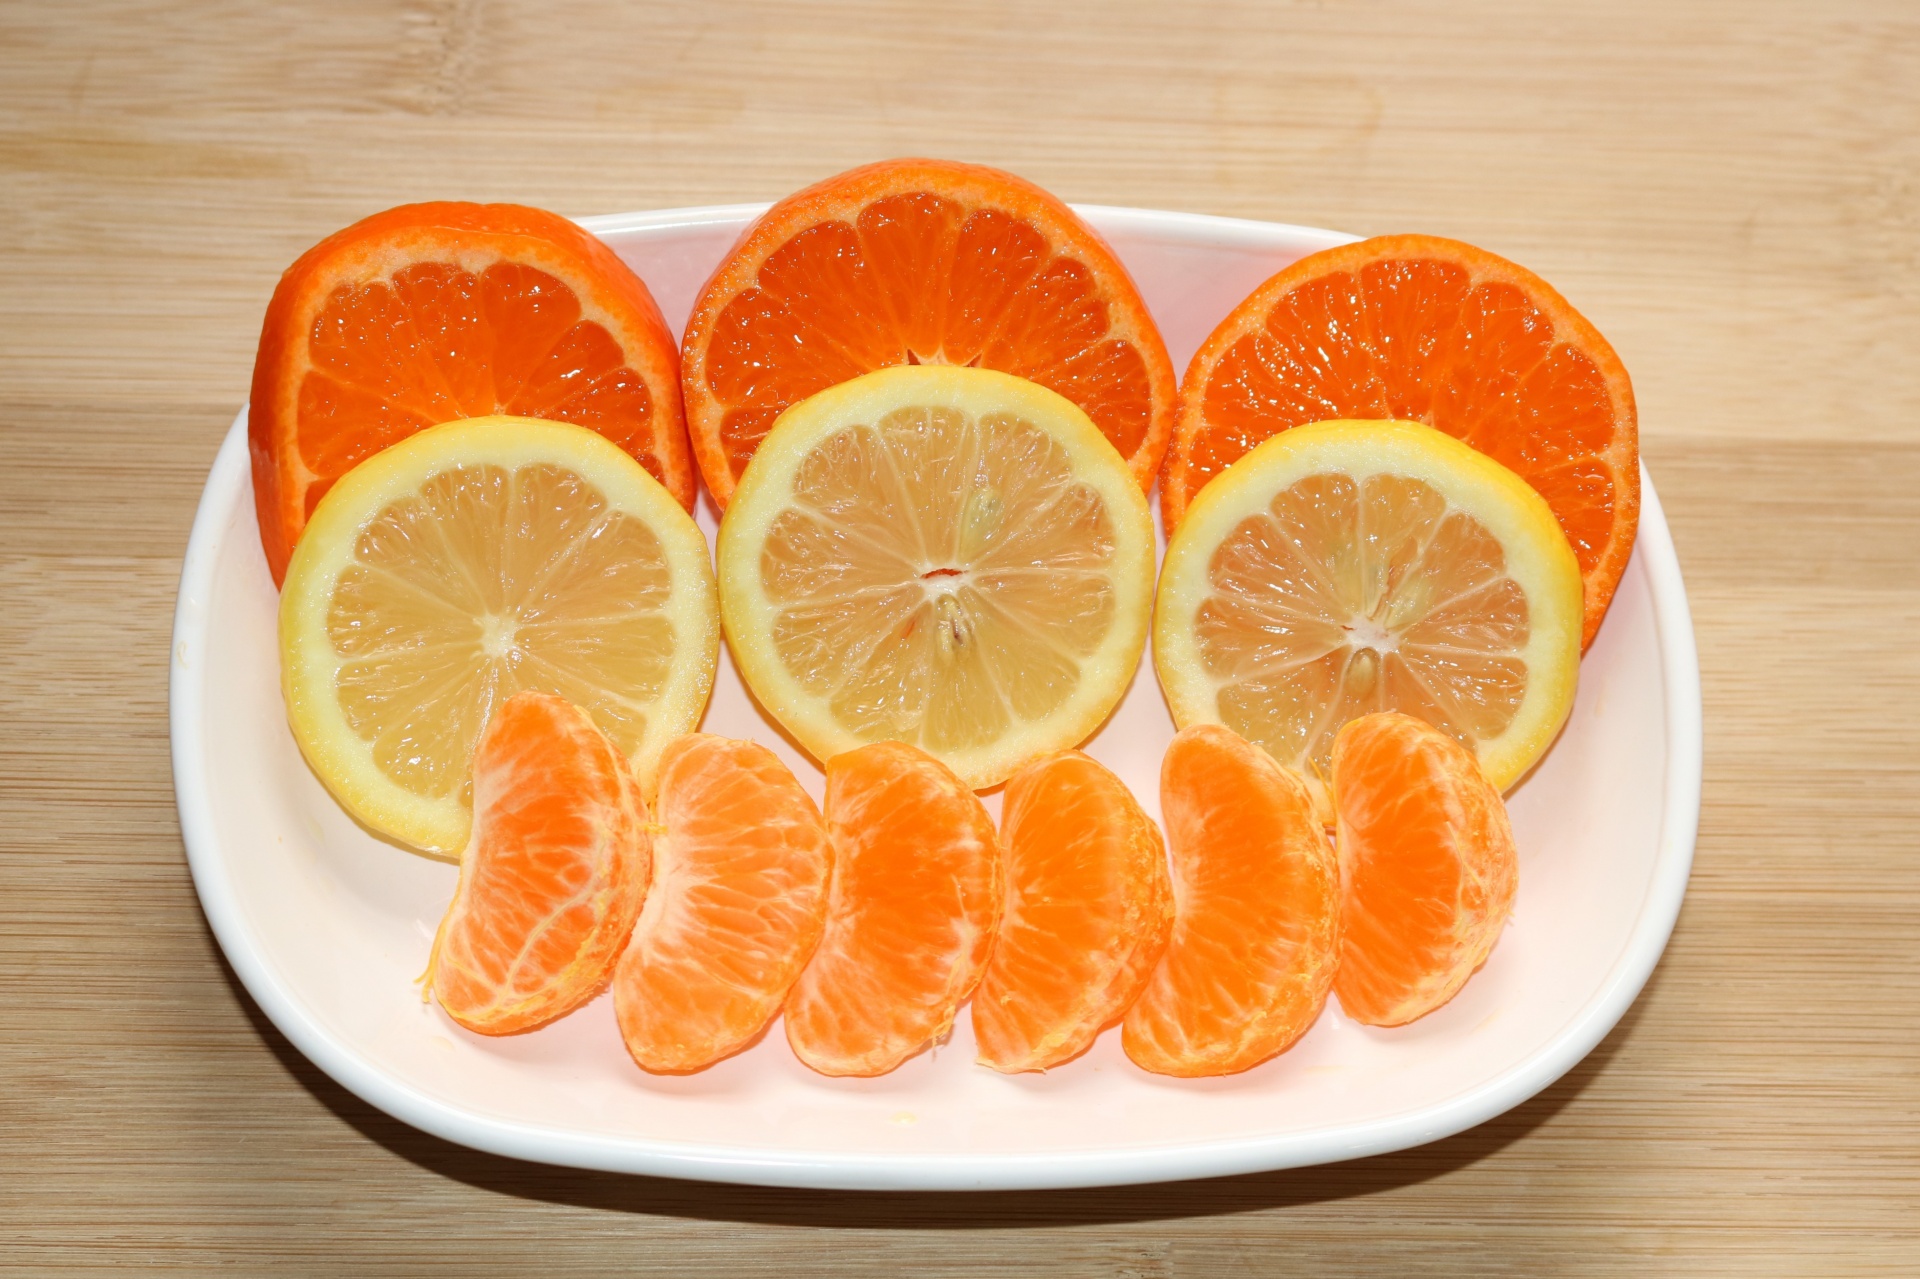 Orange And Lemon Slices On Plate